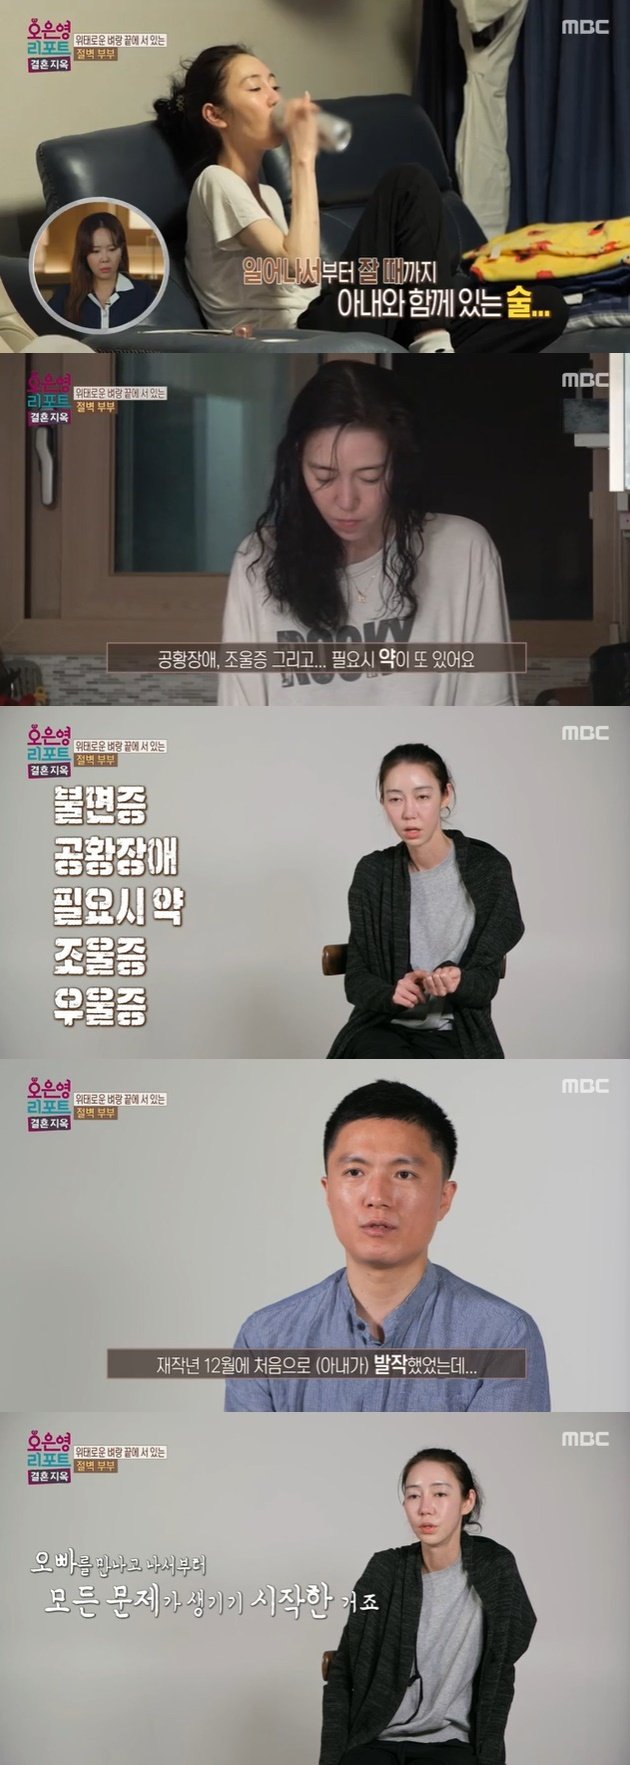 MBC '결혼 지옥' 캡처